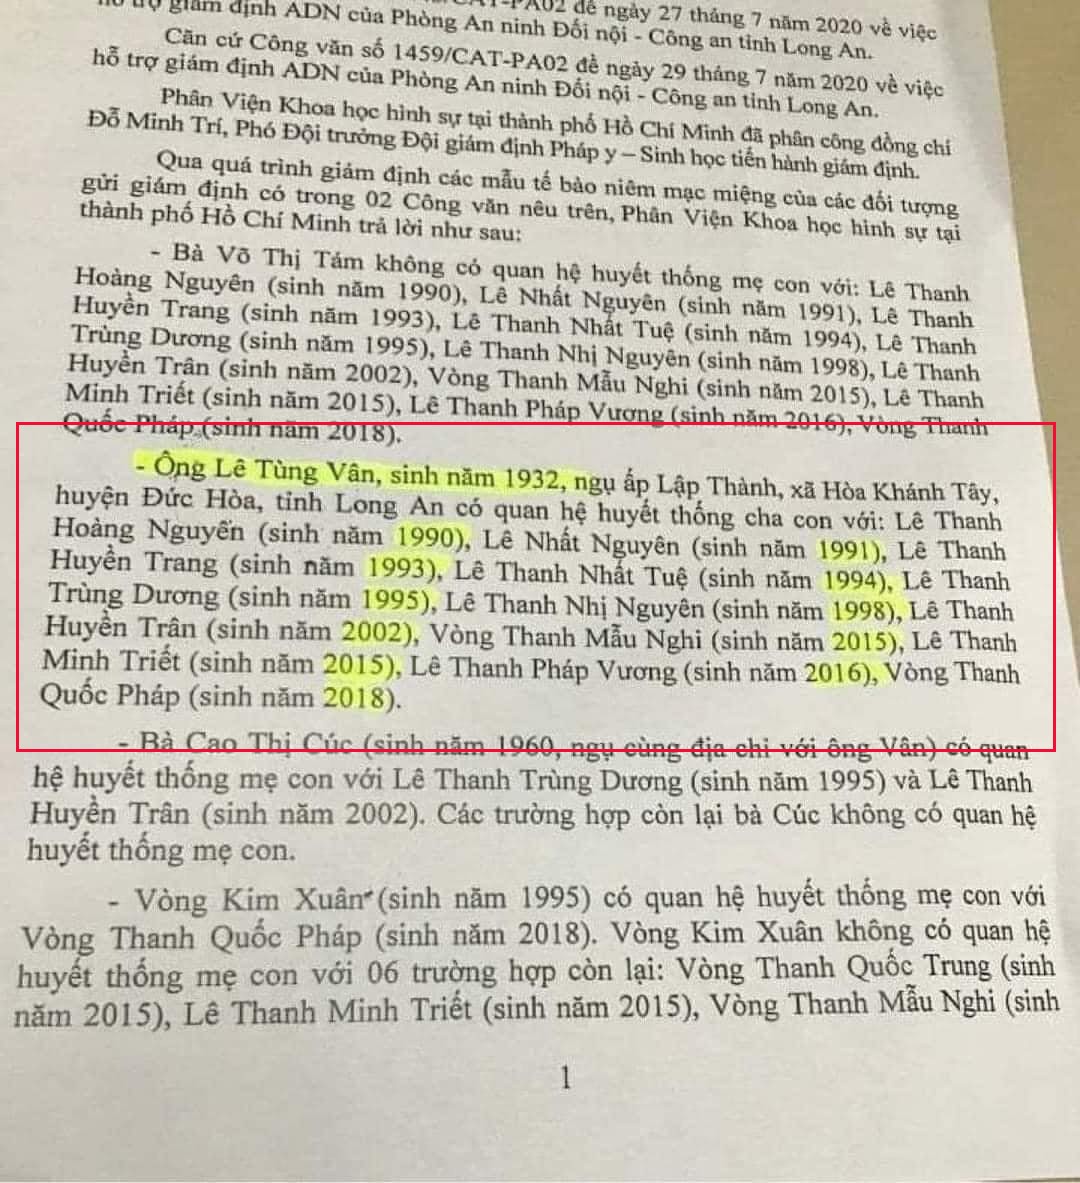 Xôn xao giấy kết quả giám định ADN của Lê Tùng Vân và những người sống trong Tịnh thất Bồng Lai: Là cha ruột của 11 người, đáng chú ý người nhỏ nhất chỉ sinh năm 2018? - Ảnh 2